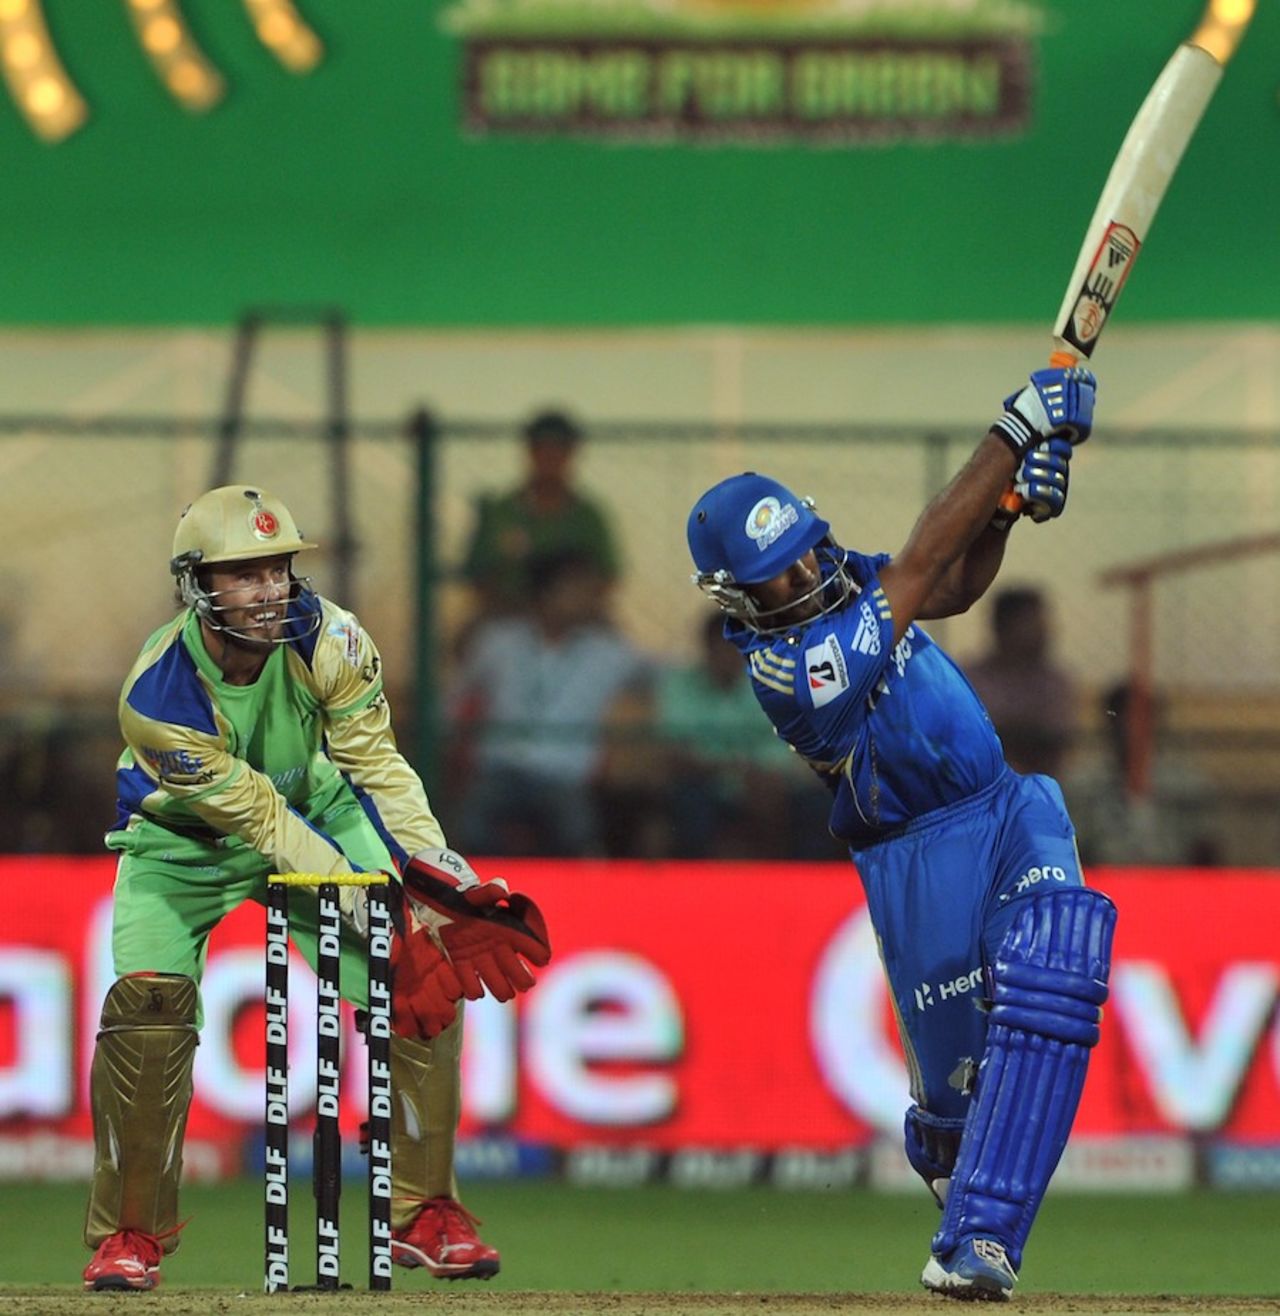 Ambati Rayudu's 81 off 54 balls was a match-winning performance, Royal Challengers Bangalore v Mumbai Indians, IPL, Bangalore, May 14, 2012